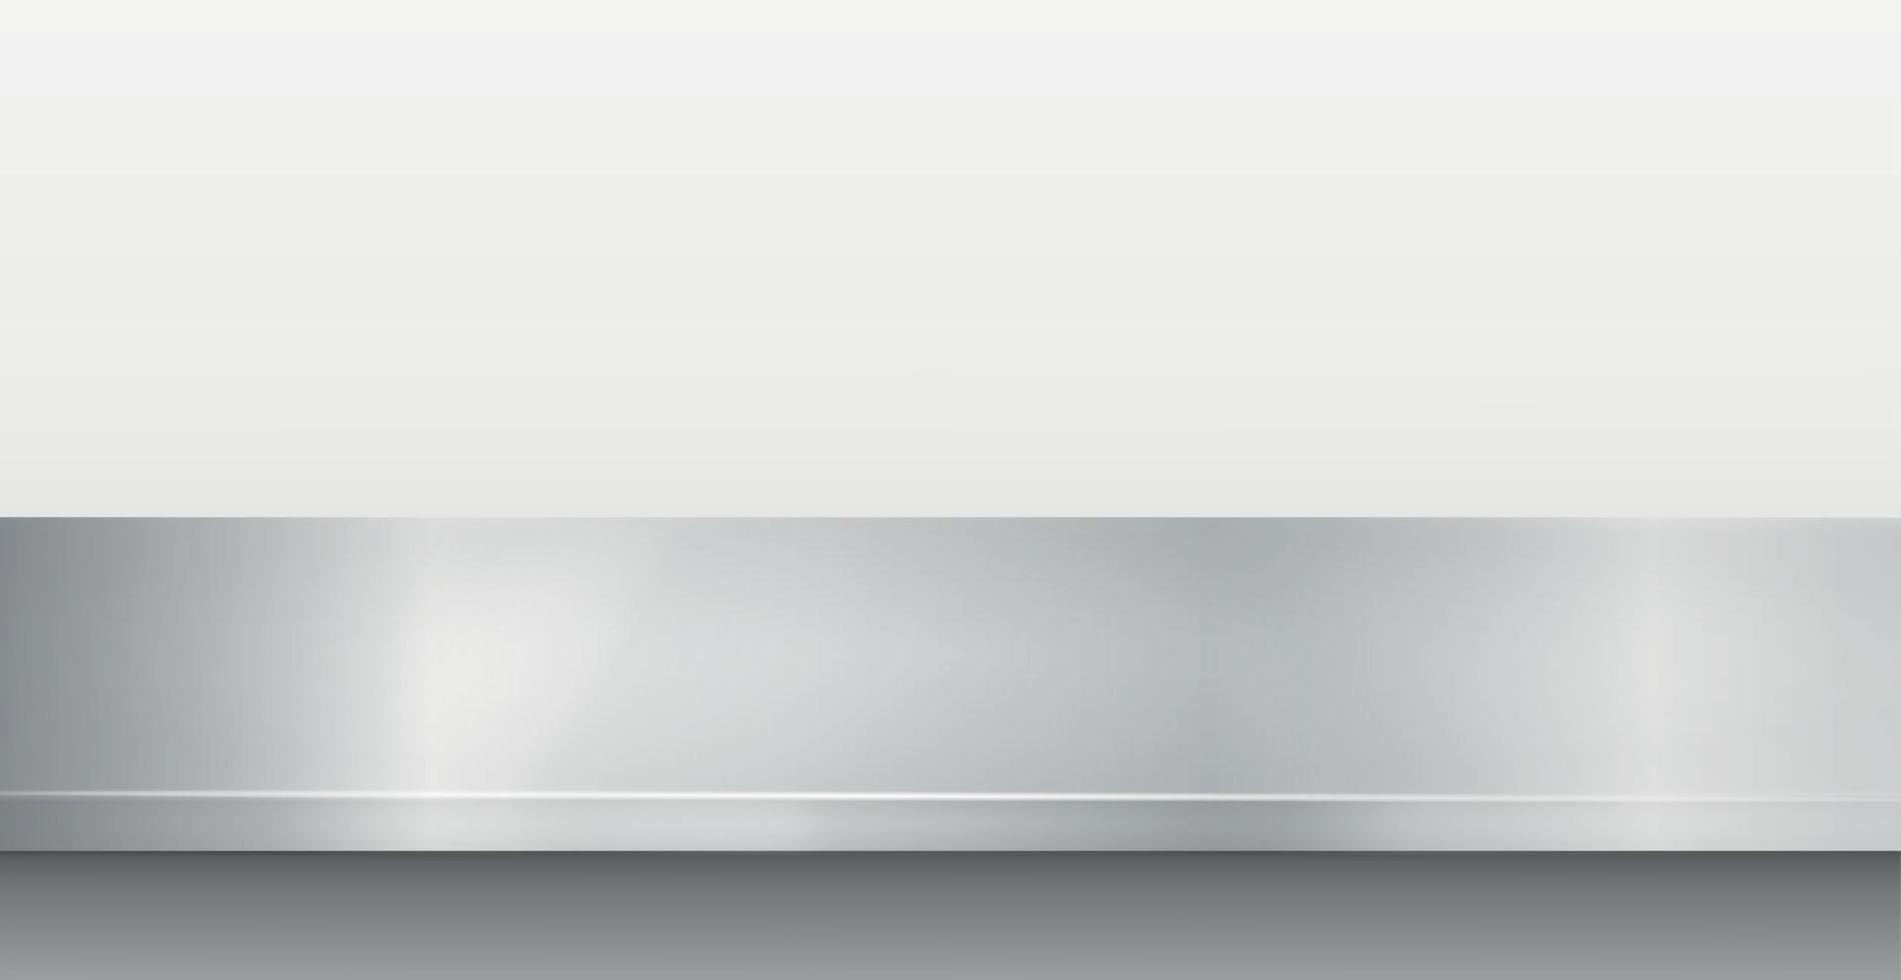 Metallküchenarbeitsplatte, Eisenbeschaffenheit, großer Tisch auf einem weißen Hintergrund - Vektor